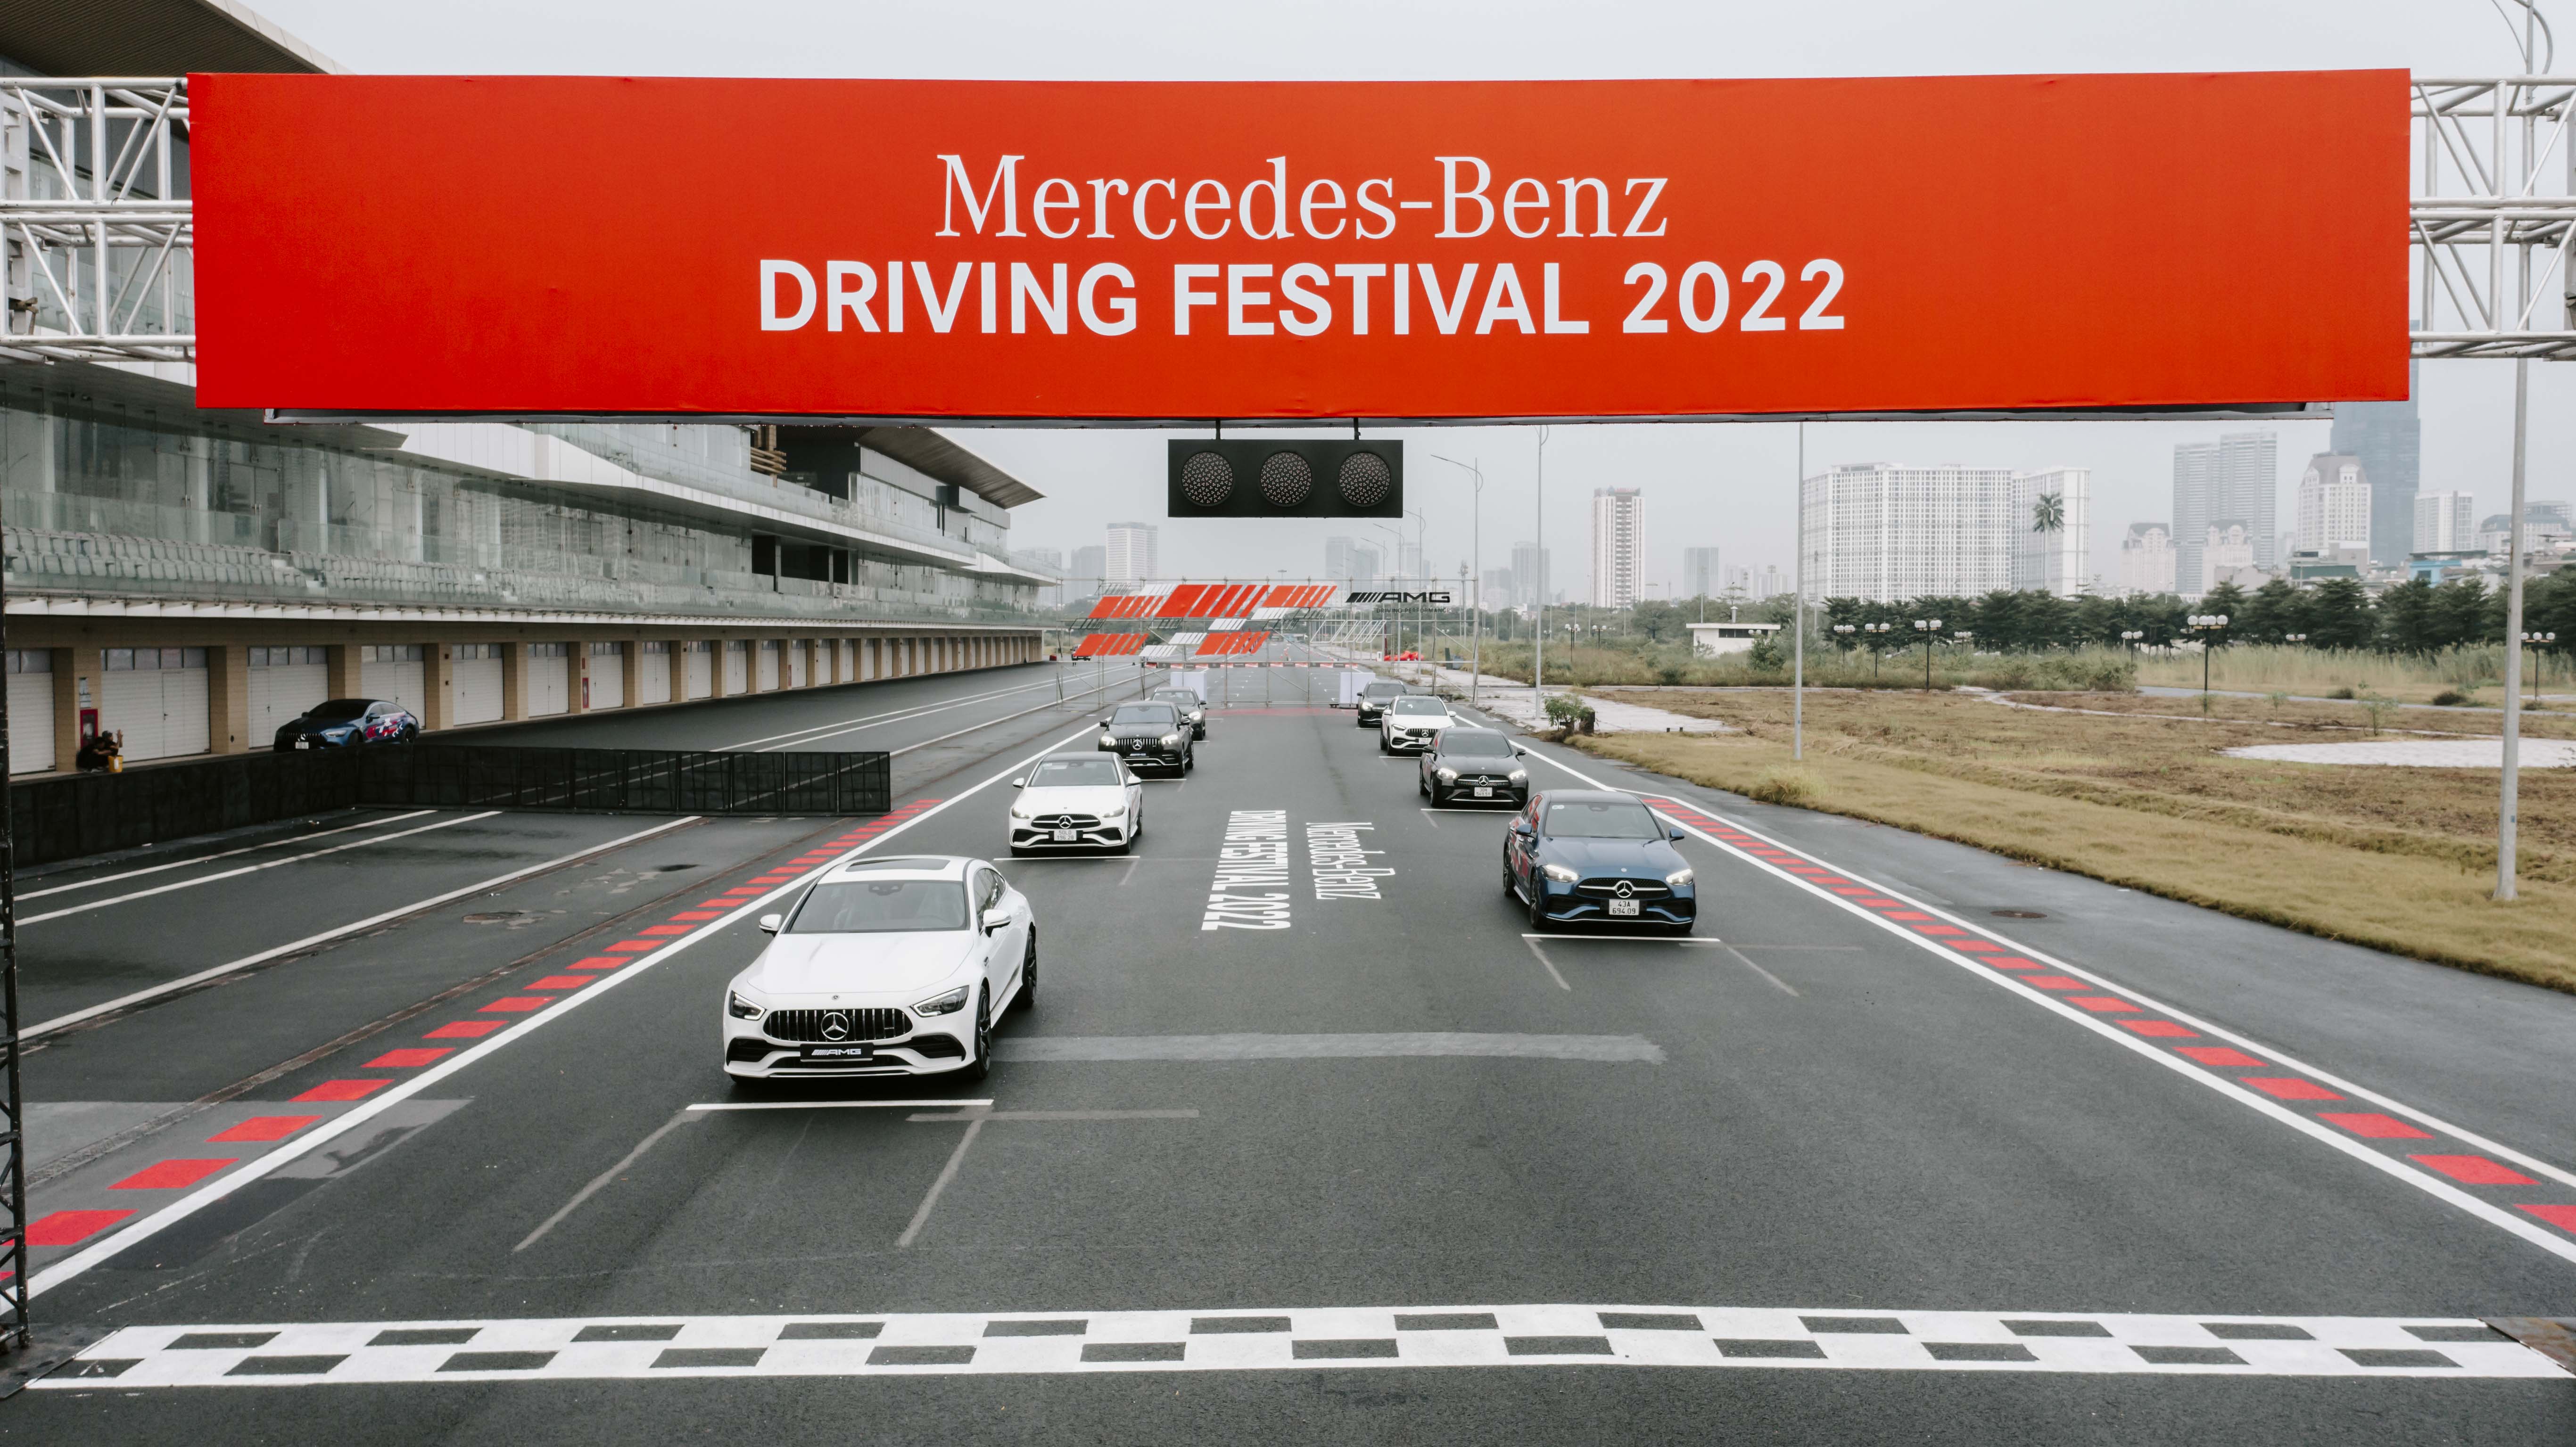 Đủ cung bậc cảm xúc trên đường đua F1 Hà Nội với Mercedes-Benz Driving Fesitval 2022